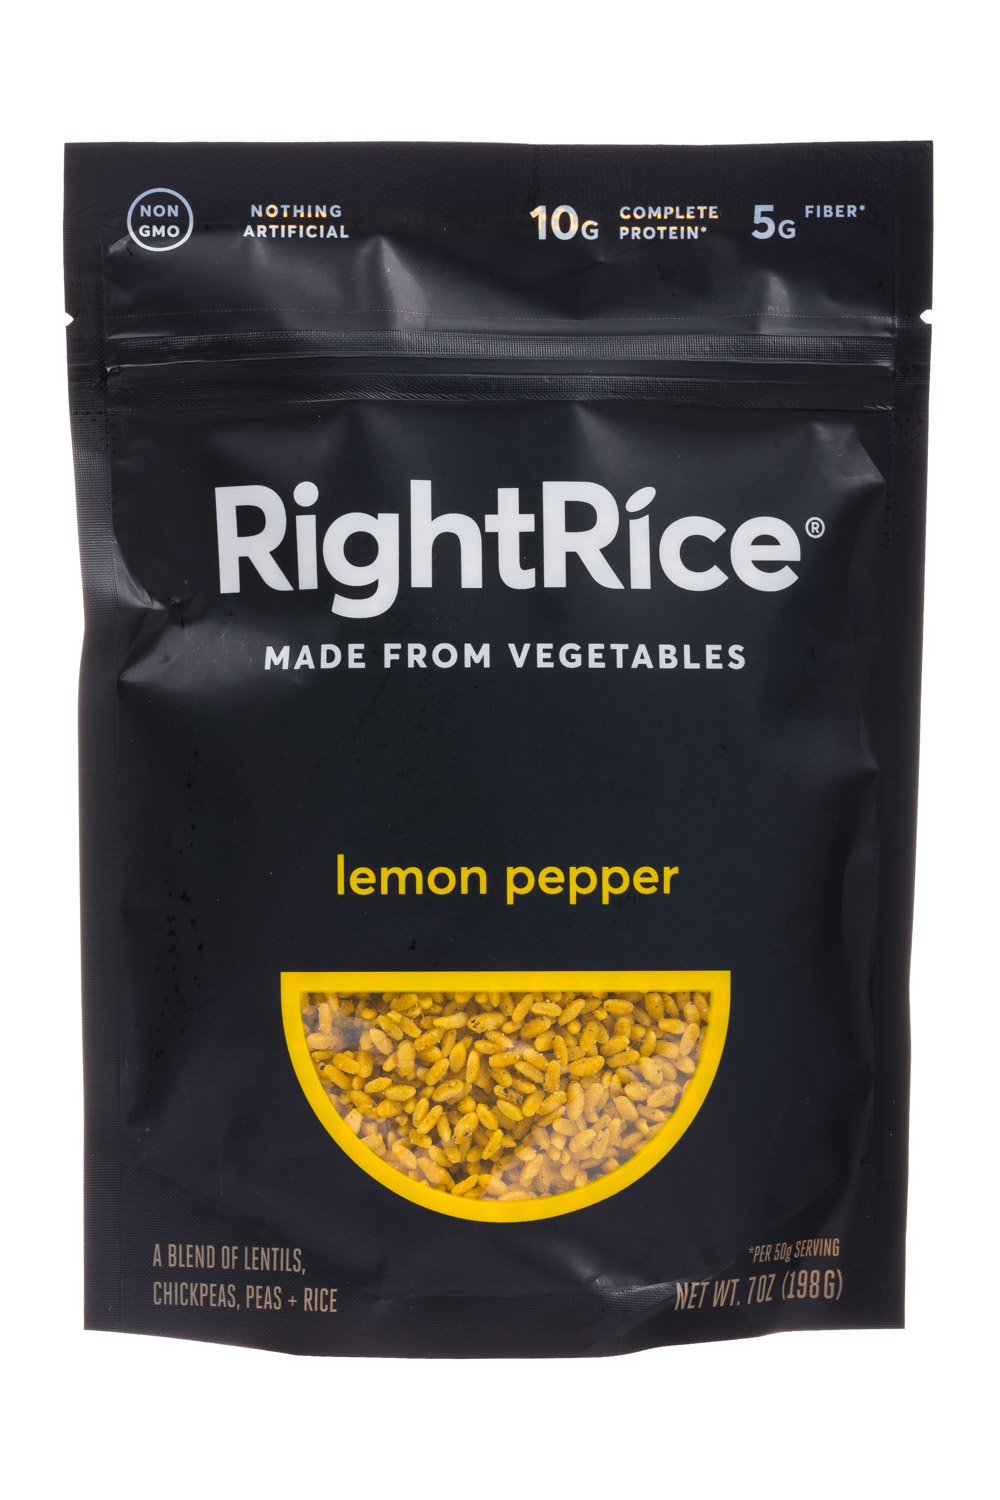 Lemon Pepper